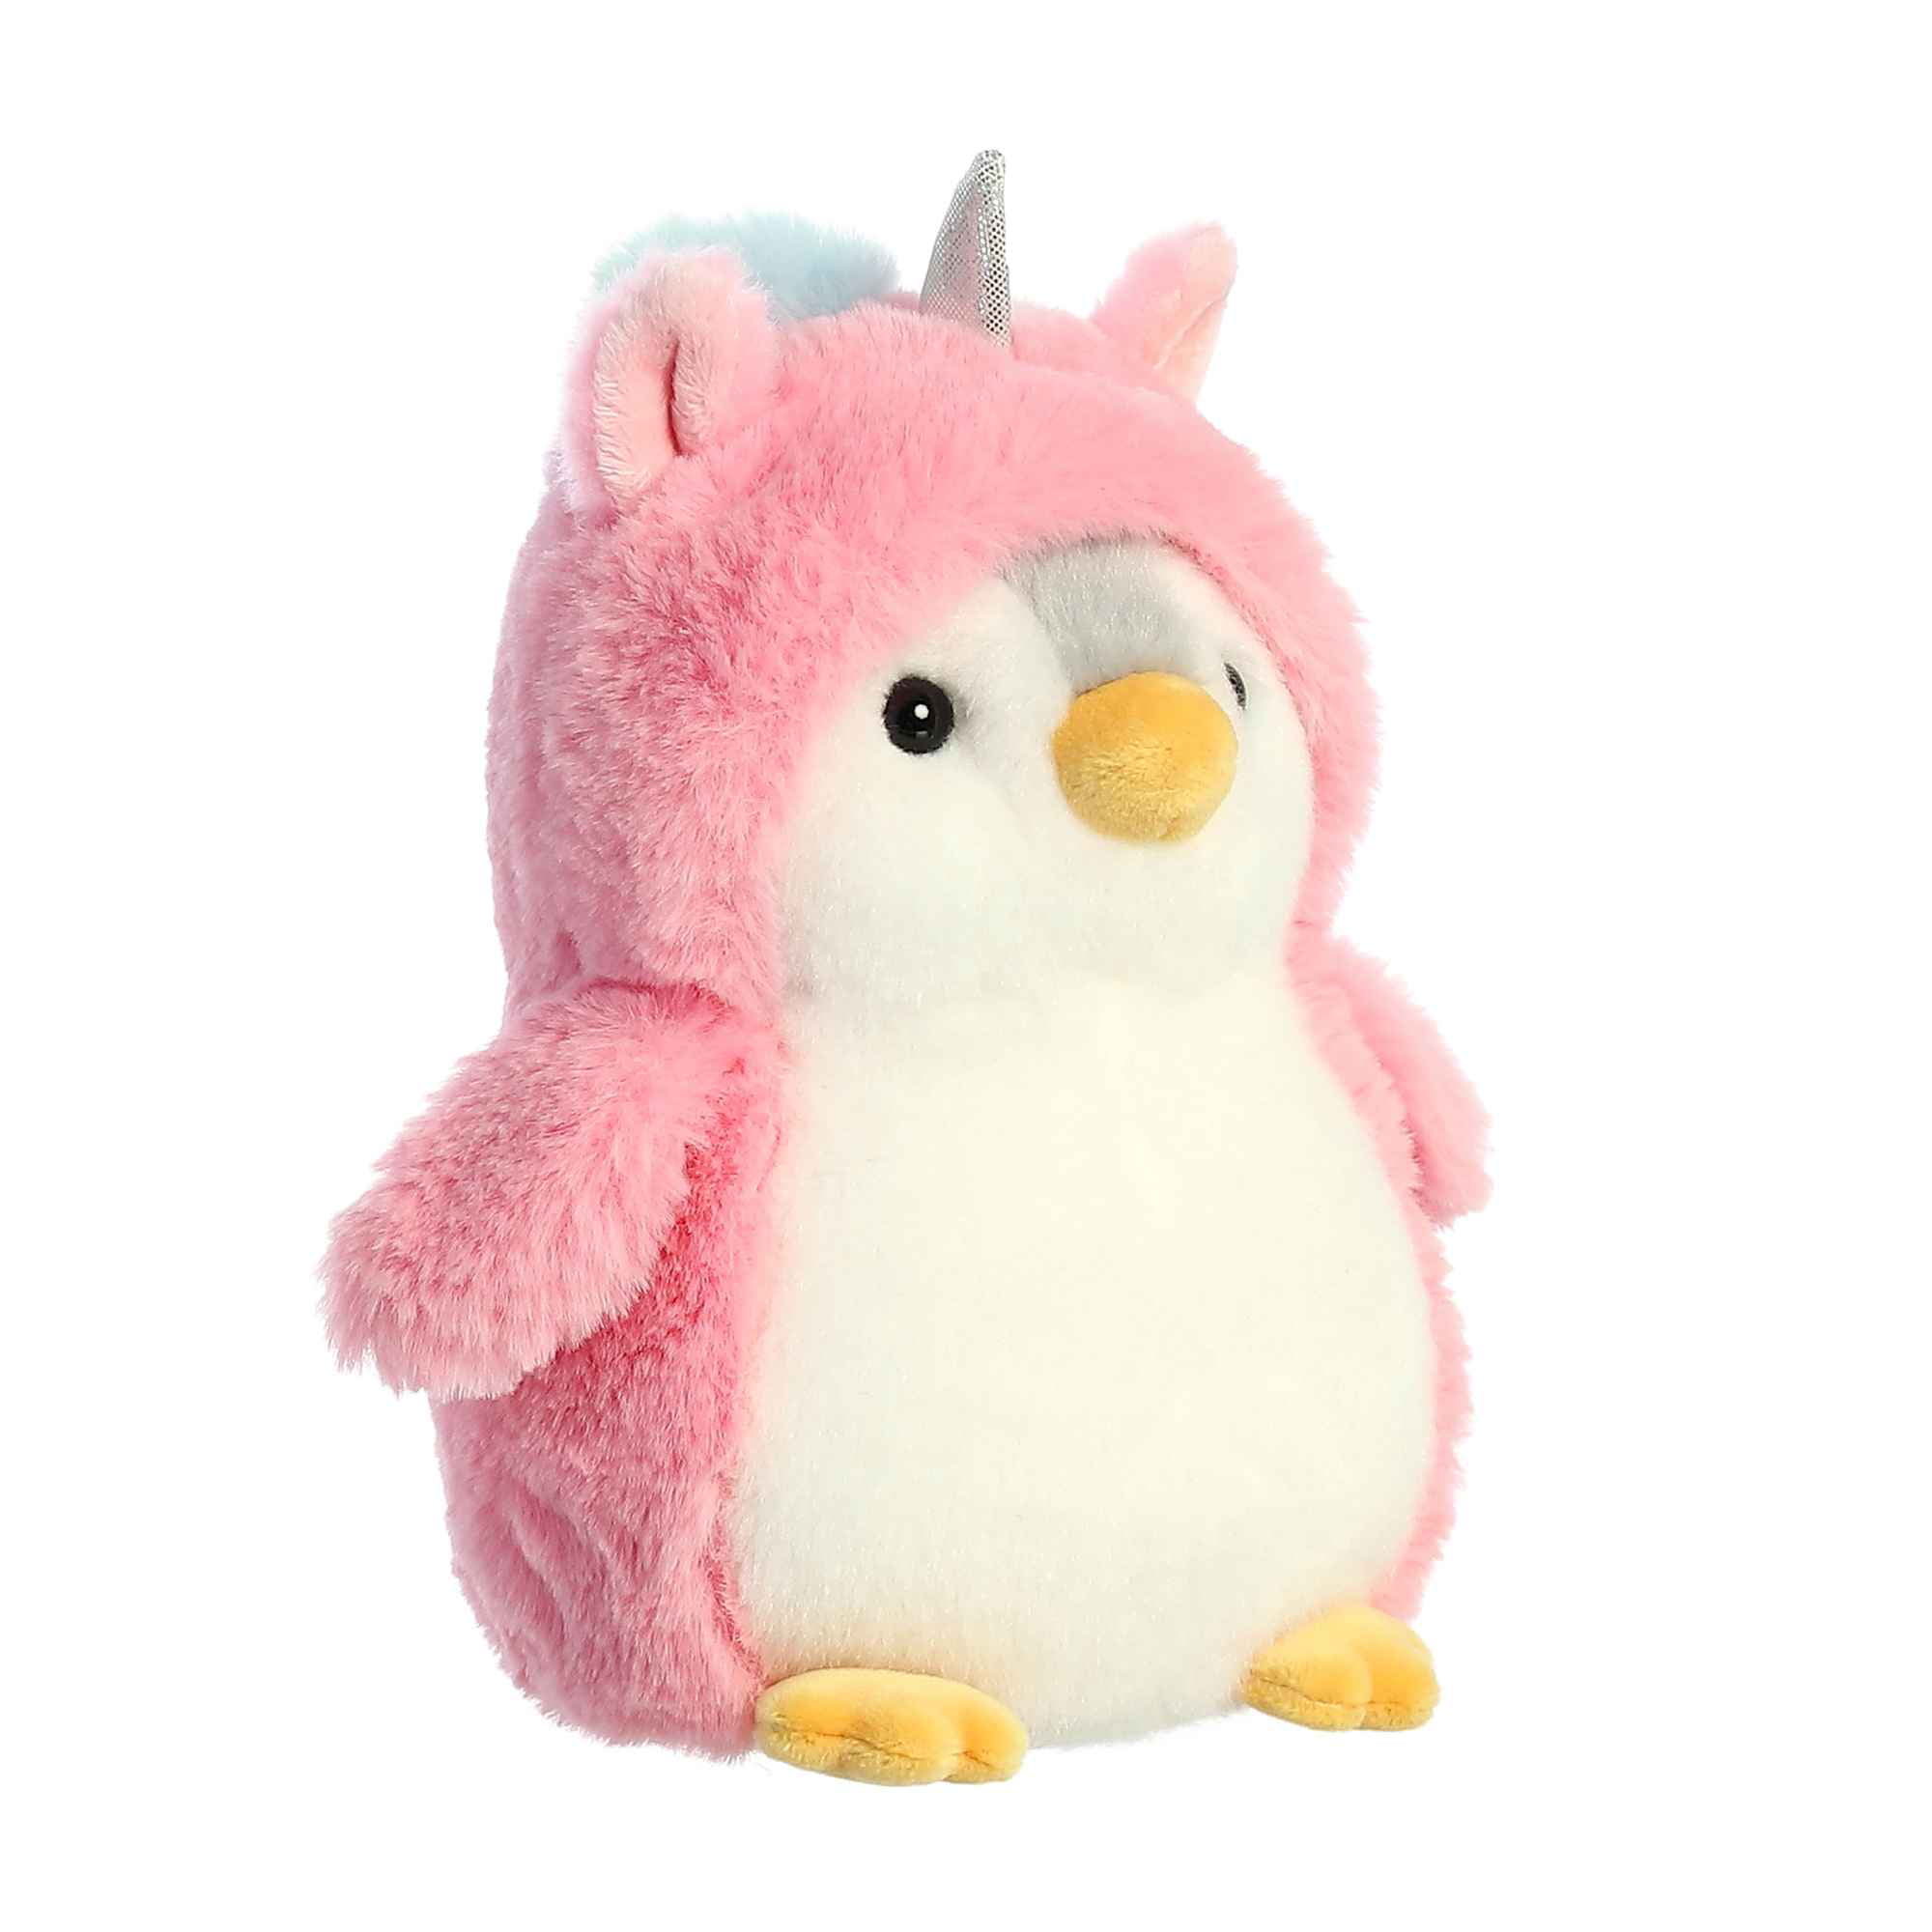 Aurora POM POM PLUSH Cuddly Soft Toy Teddy Kids Gift Brand New